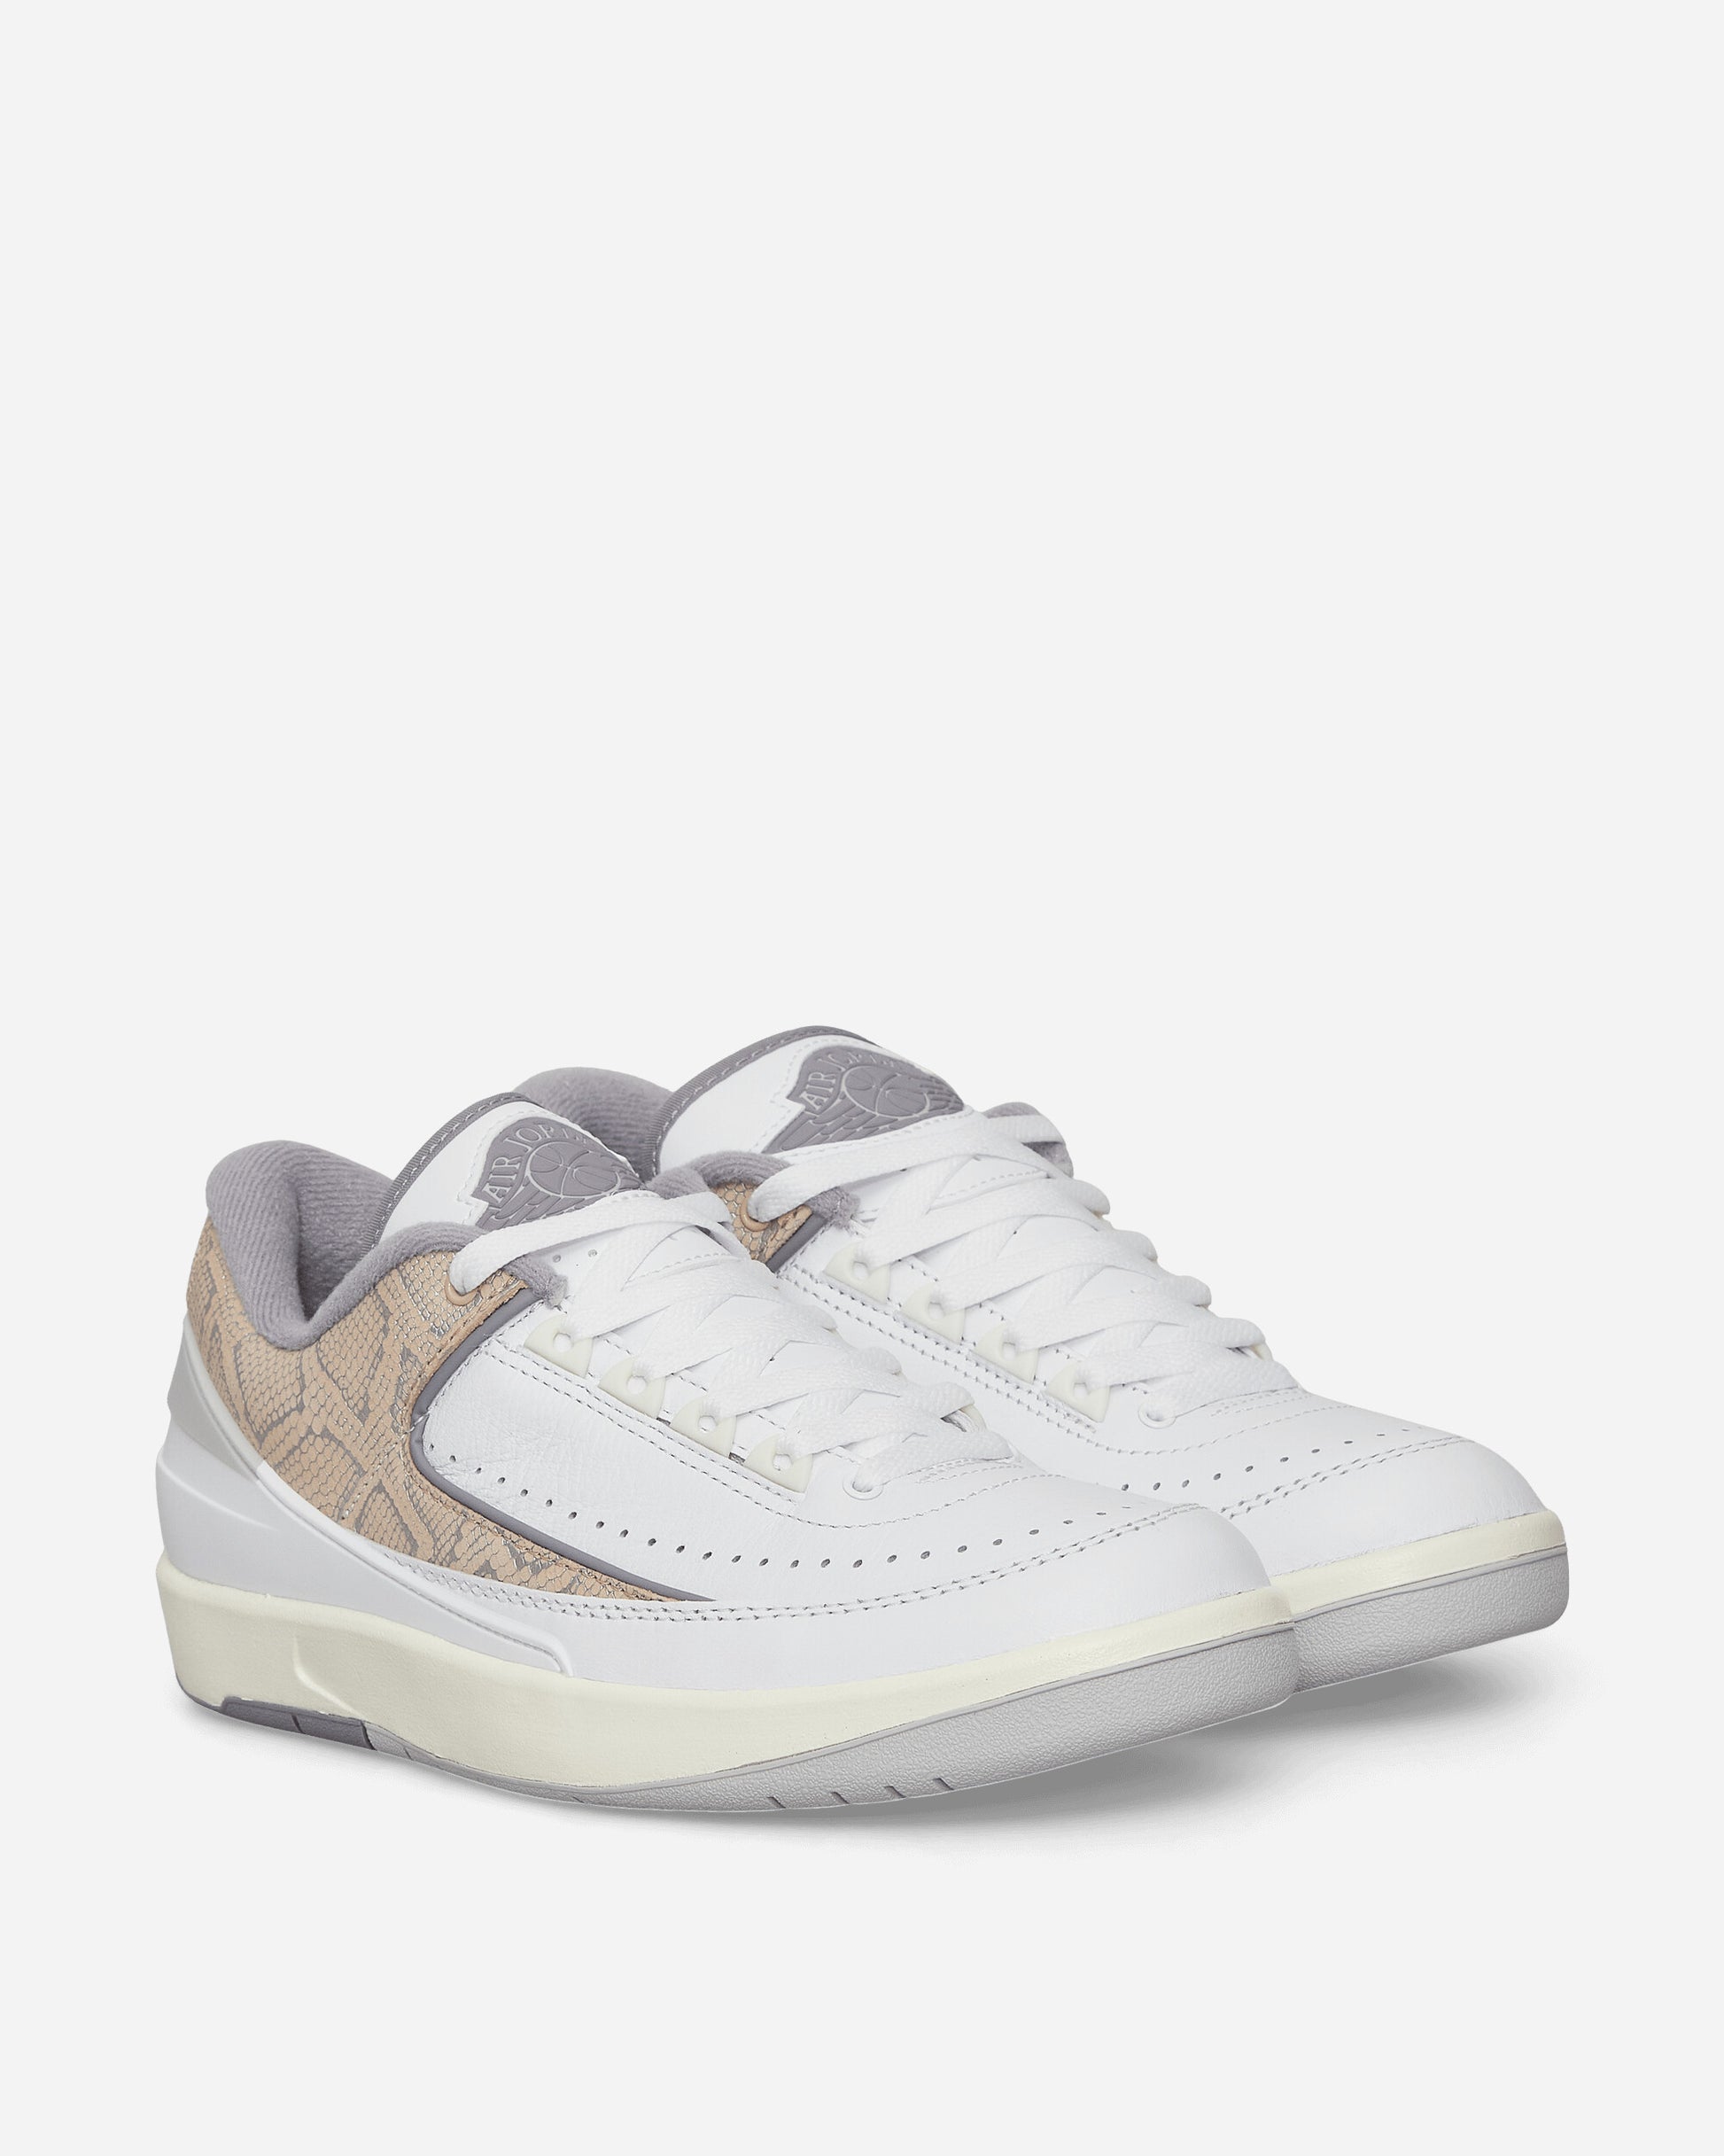 Nike Jordan Air Jordan 2 Retro Low White/Cement Grey Sneakers Low DV9956-100